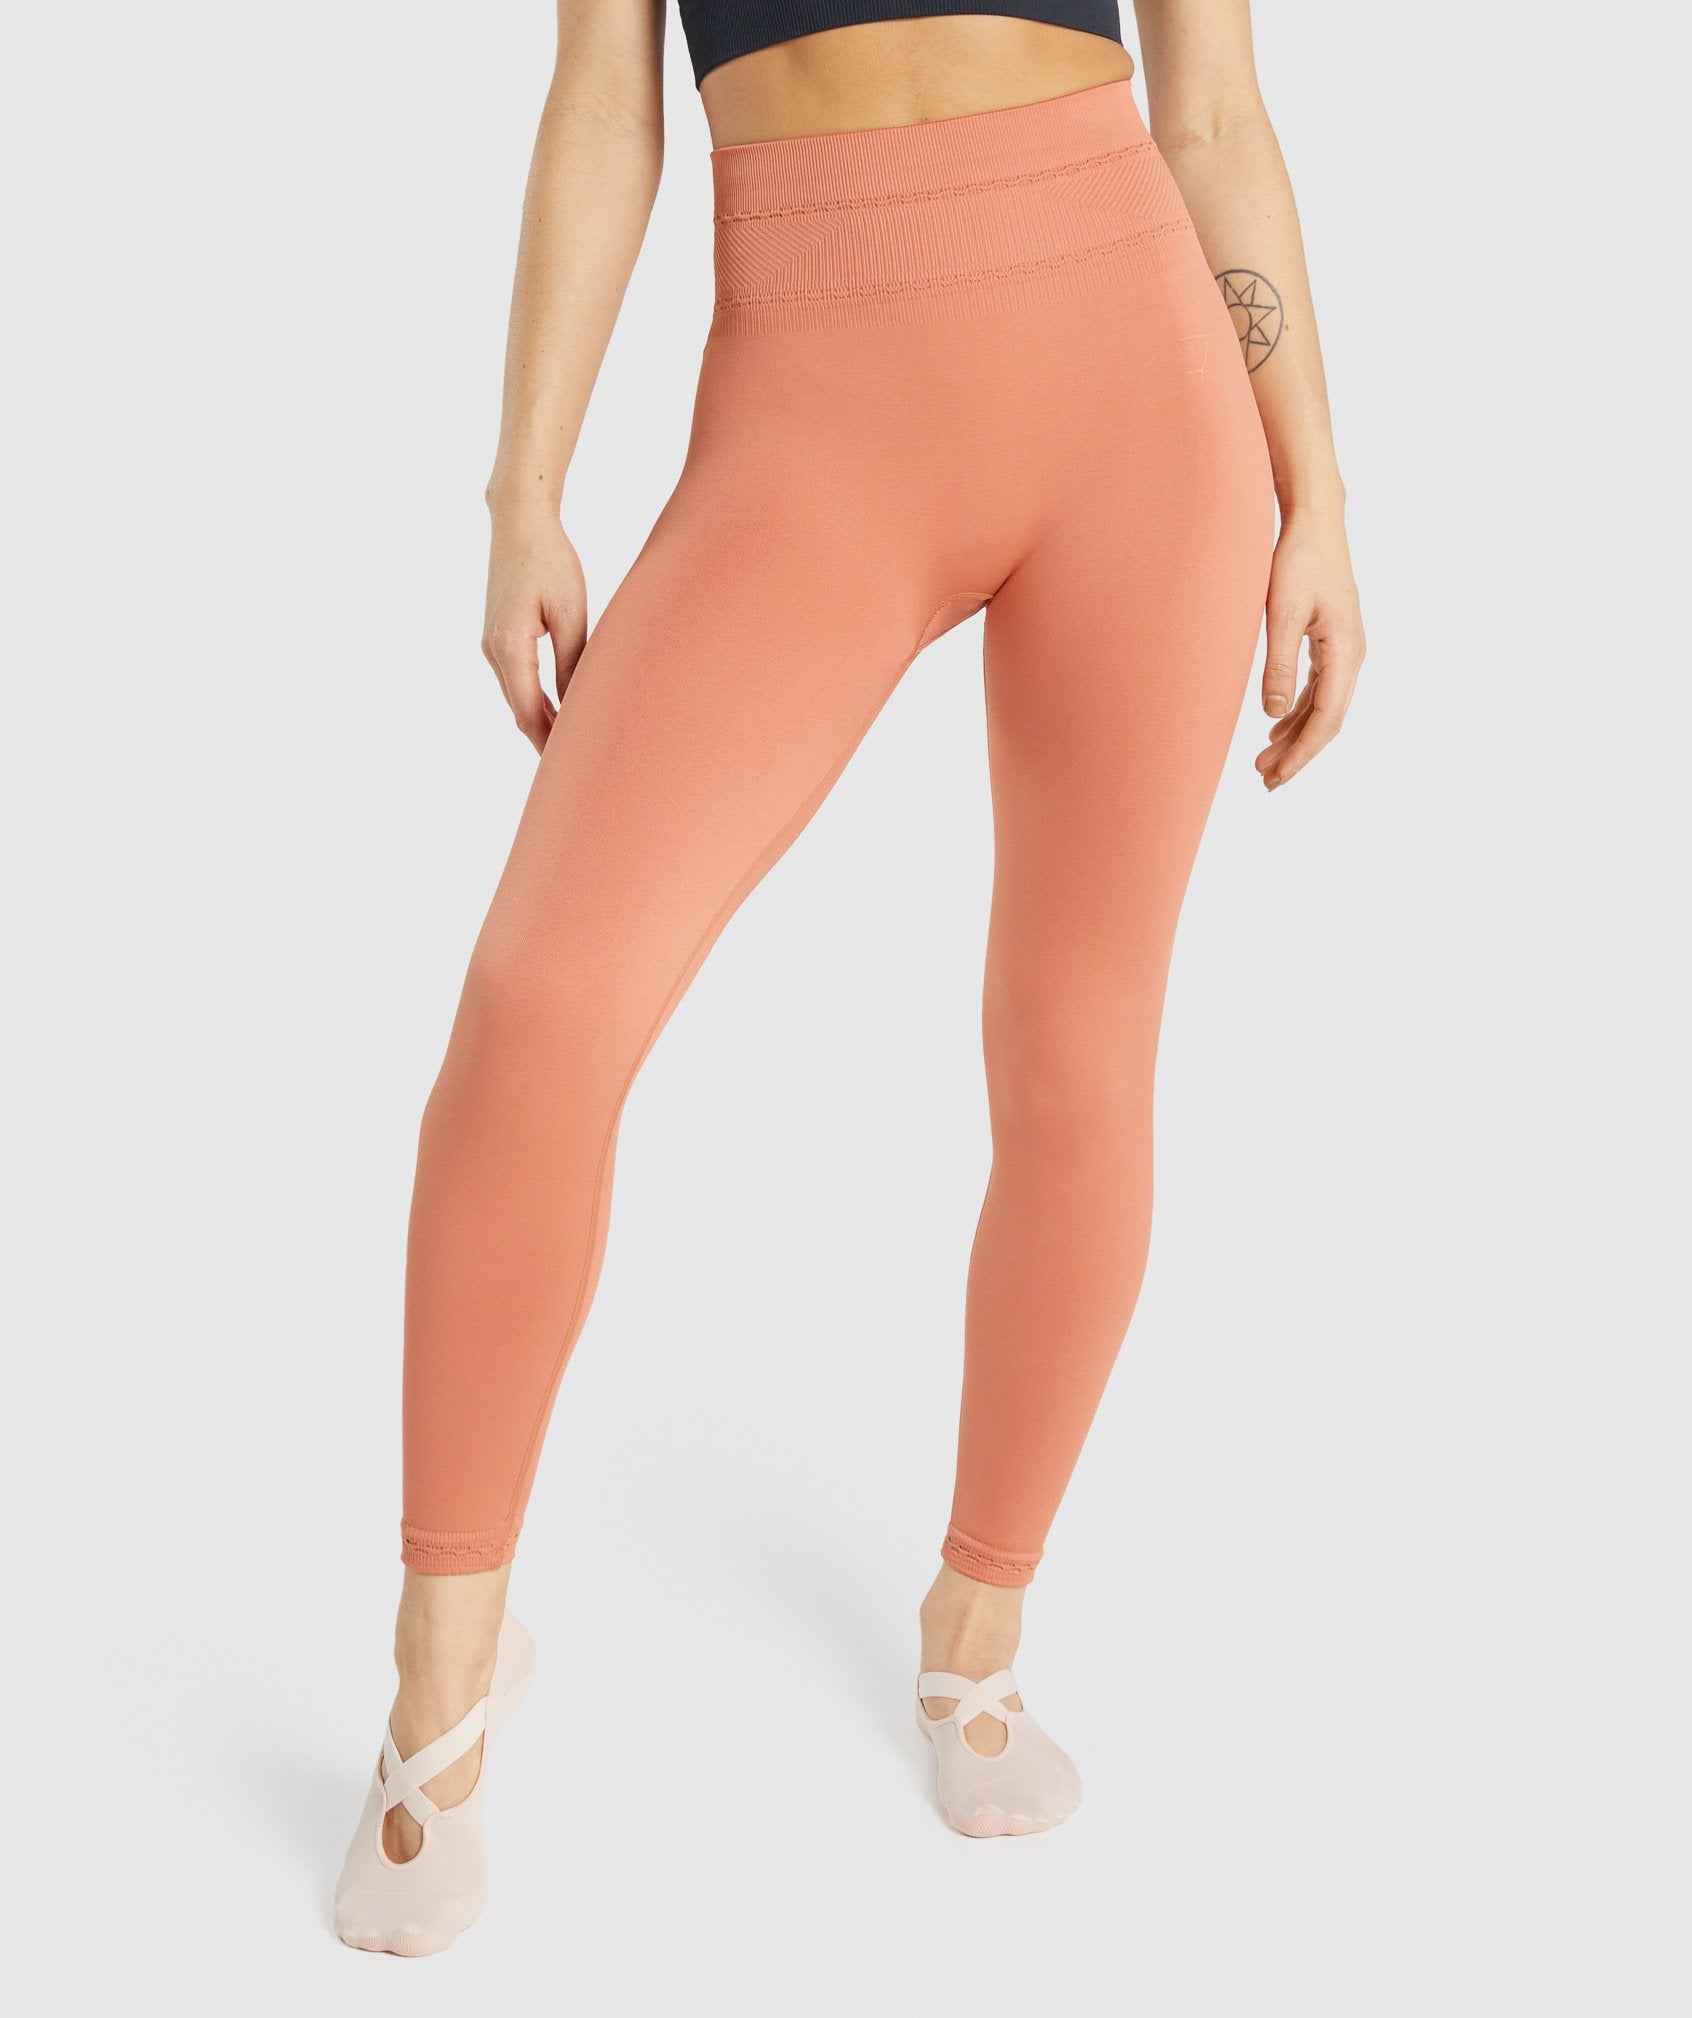  Orange - Women's Activewear Leggings / Women's